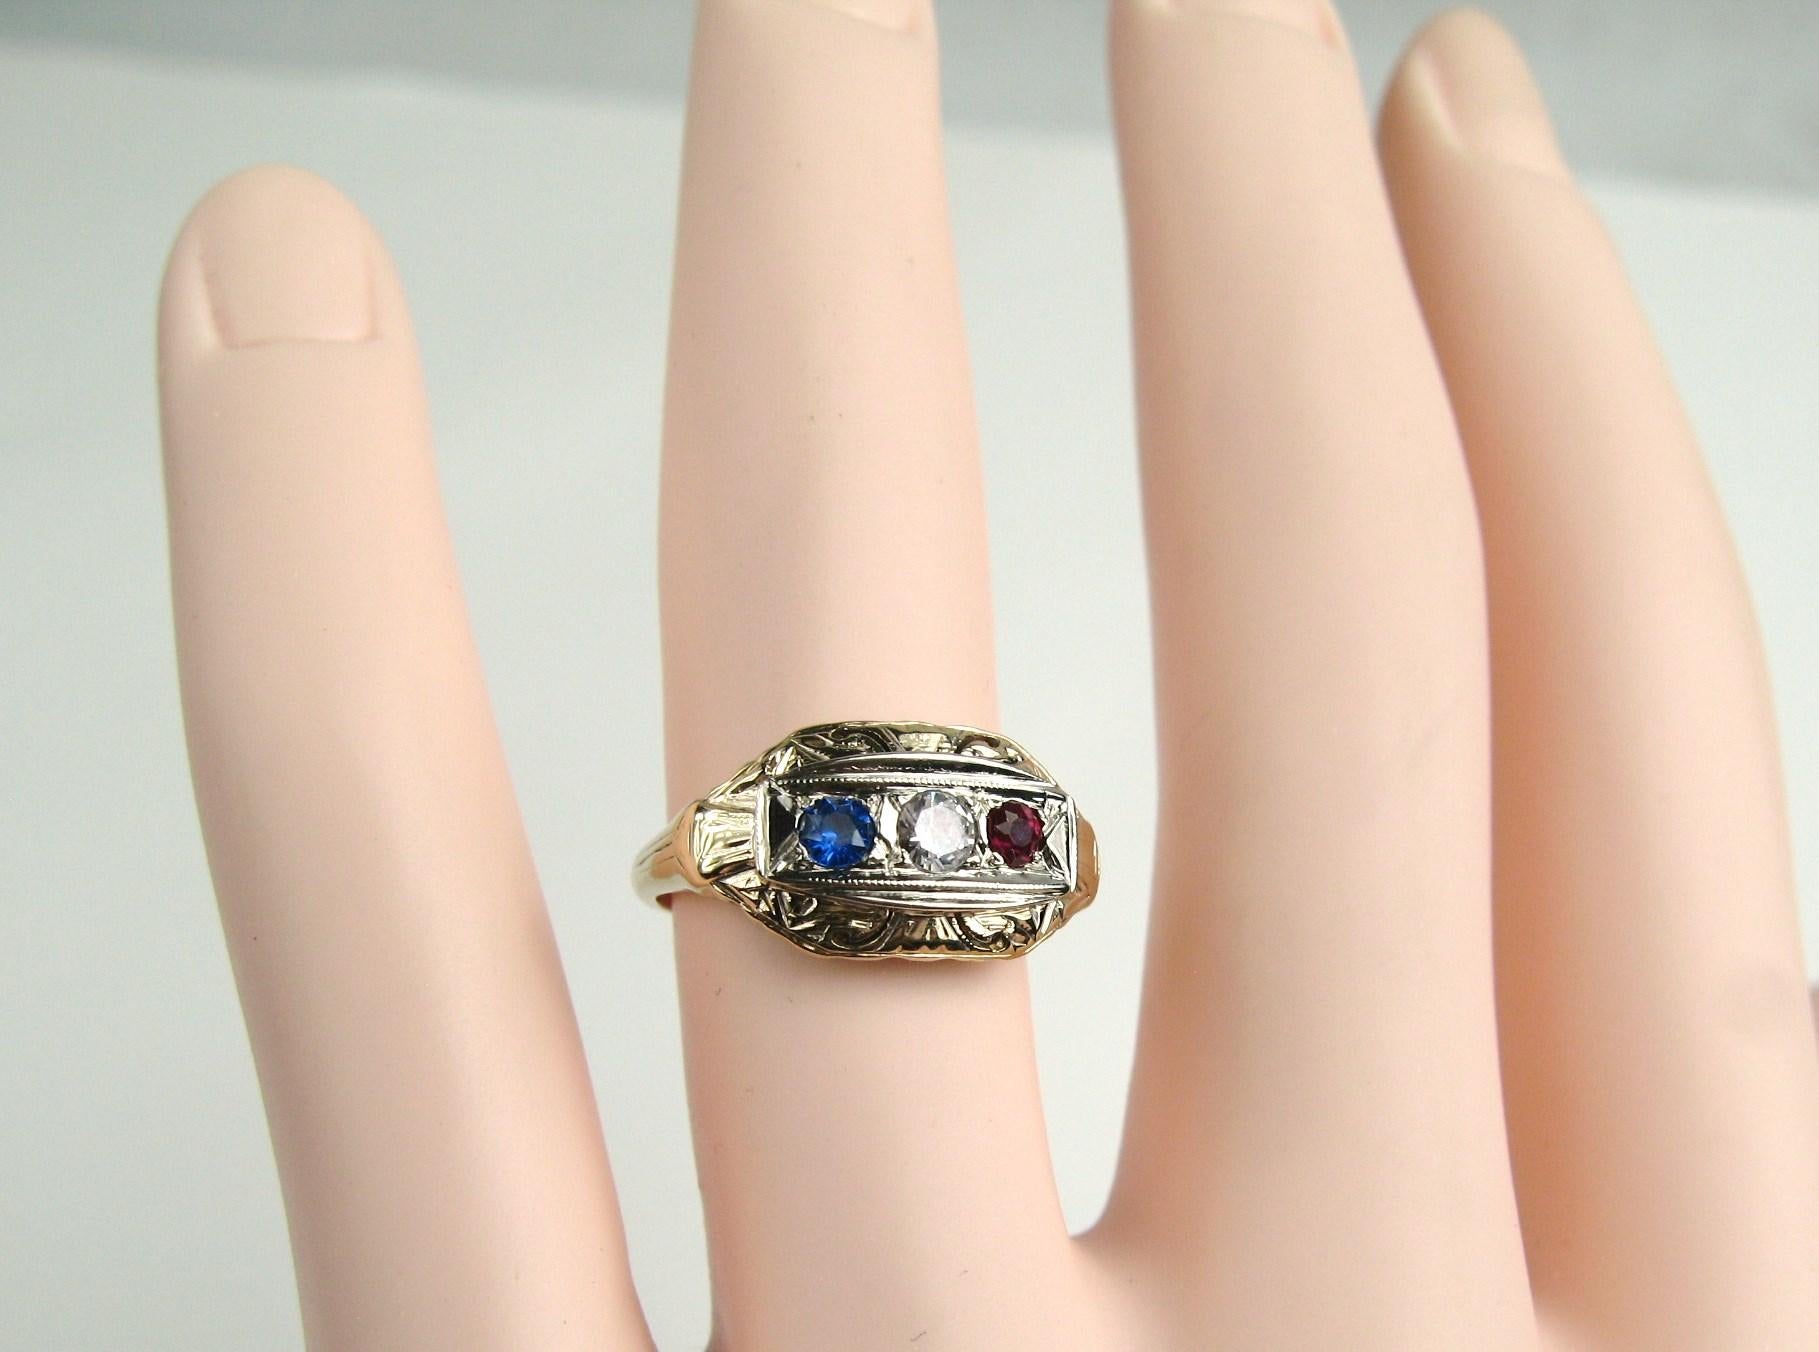 14K Gold Art Deco 3 Stein Ring. Rot, Weiß und Blau gefärbte Steine. Dieser Ring stammt aus der Zeit des Art-Déco-Schmucks, ca. 1920-1935. Ring ist eine Größe 6. Er kann von uns oder Ihrem Juwelier angepasst werden. In unserem Shop finden Sie